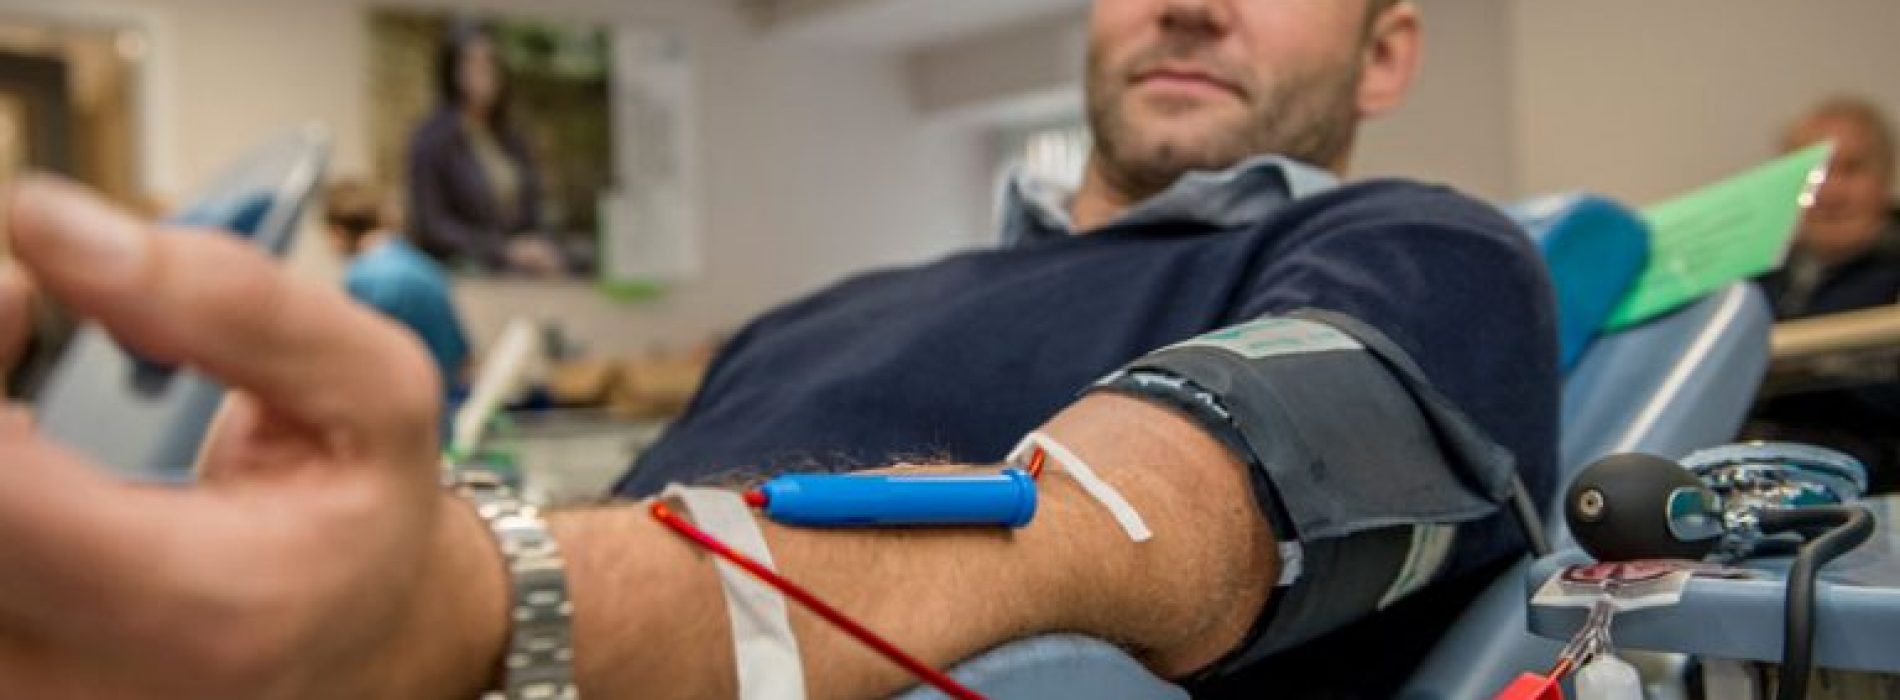 De vraag naar “puur bloed” stijgt wereldwijd als gevolg van bezorgdheid over de toename van gevaccineerd bloed